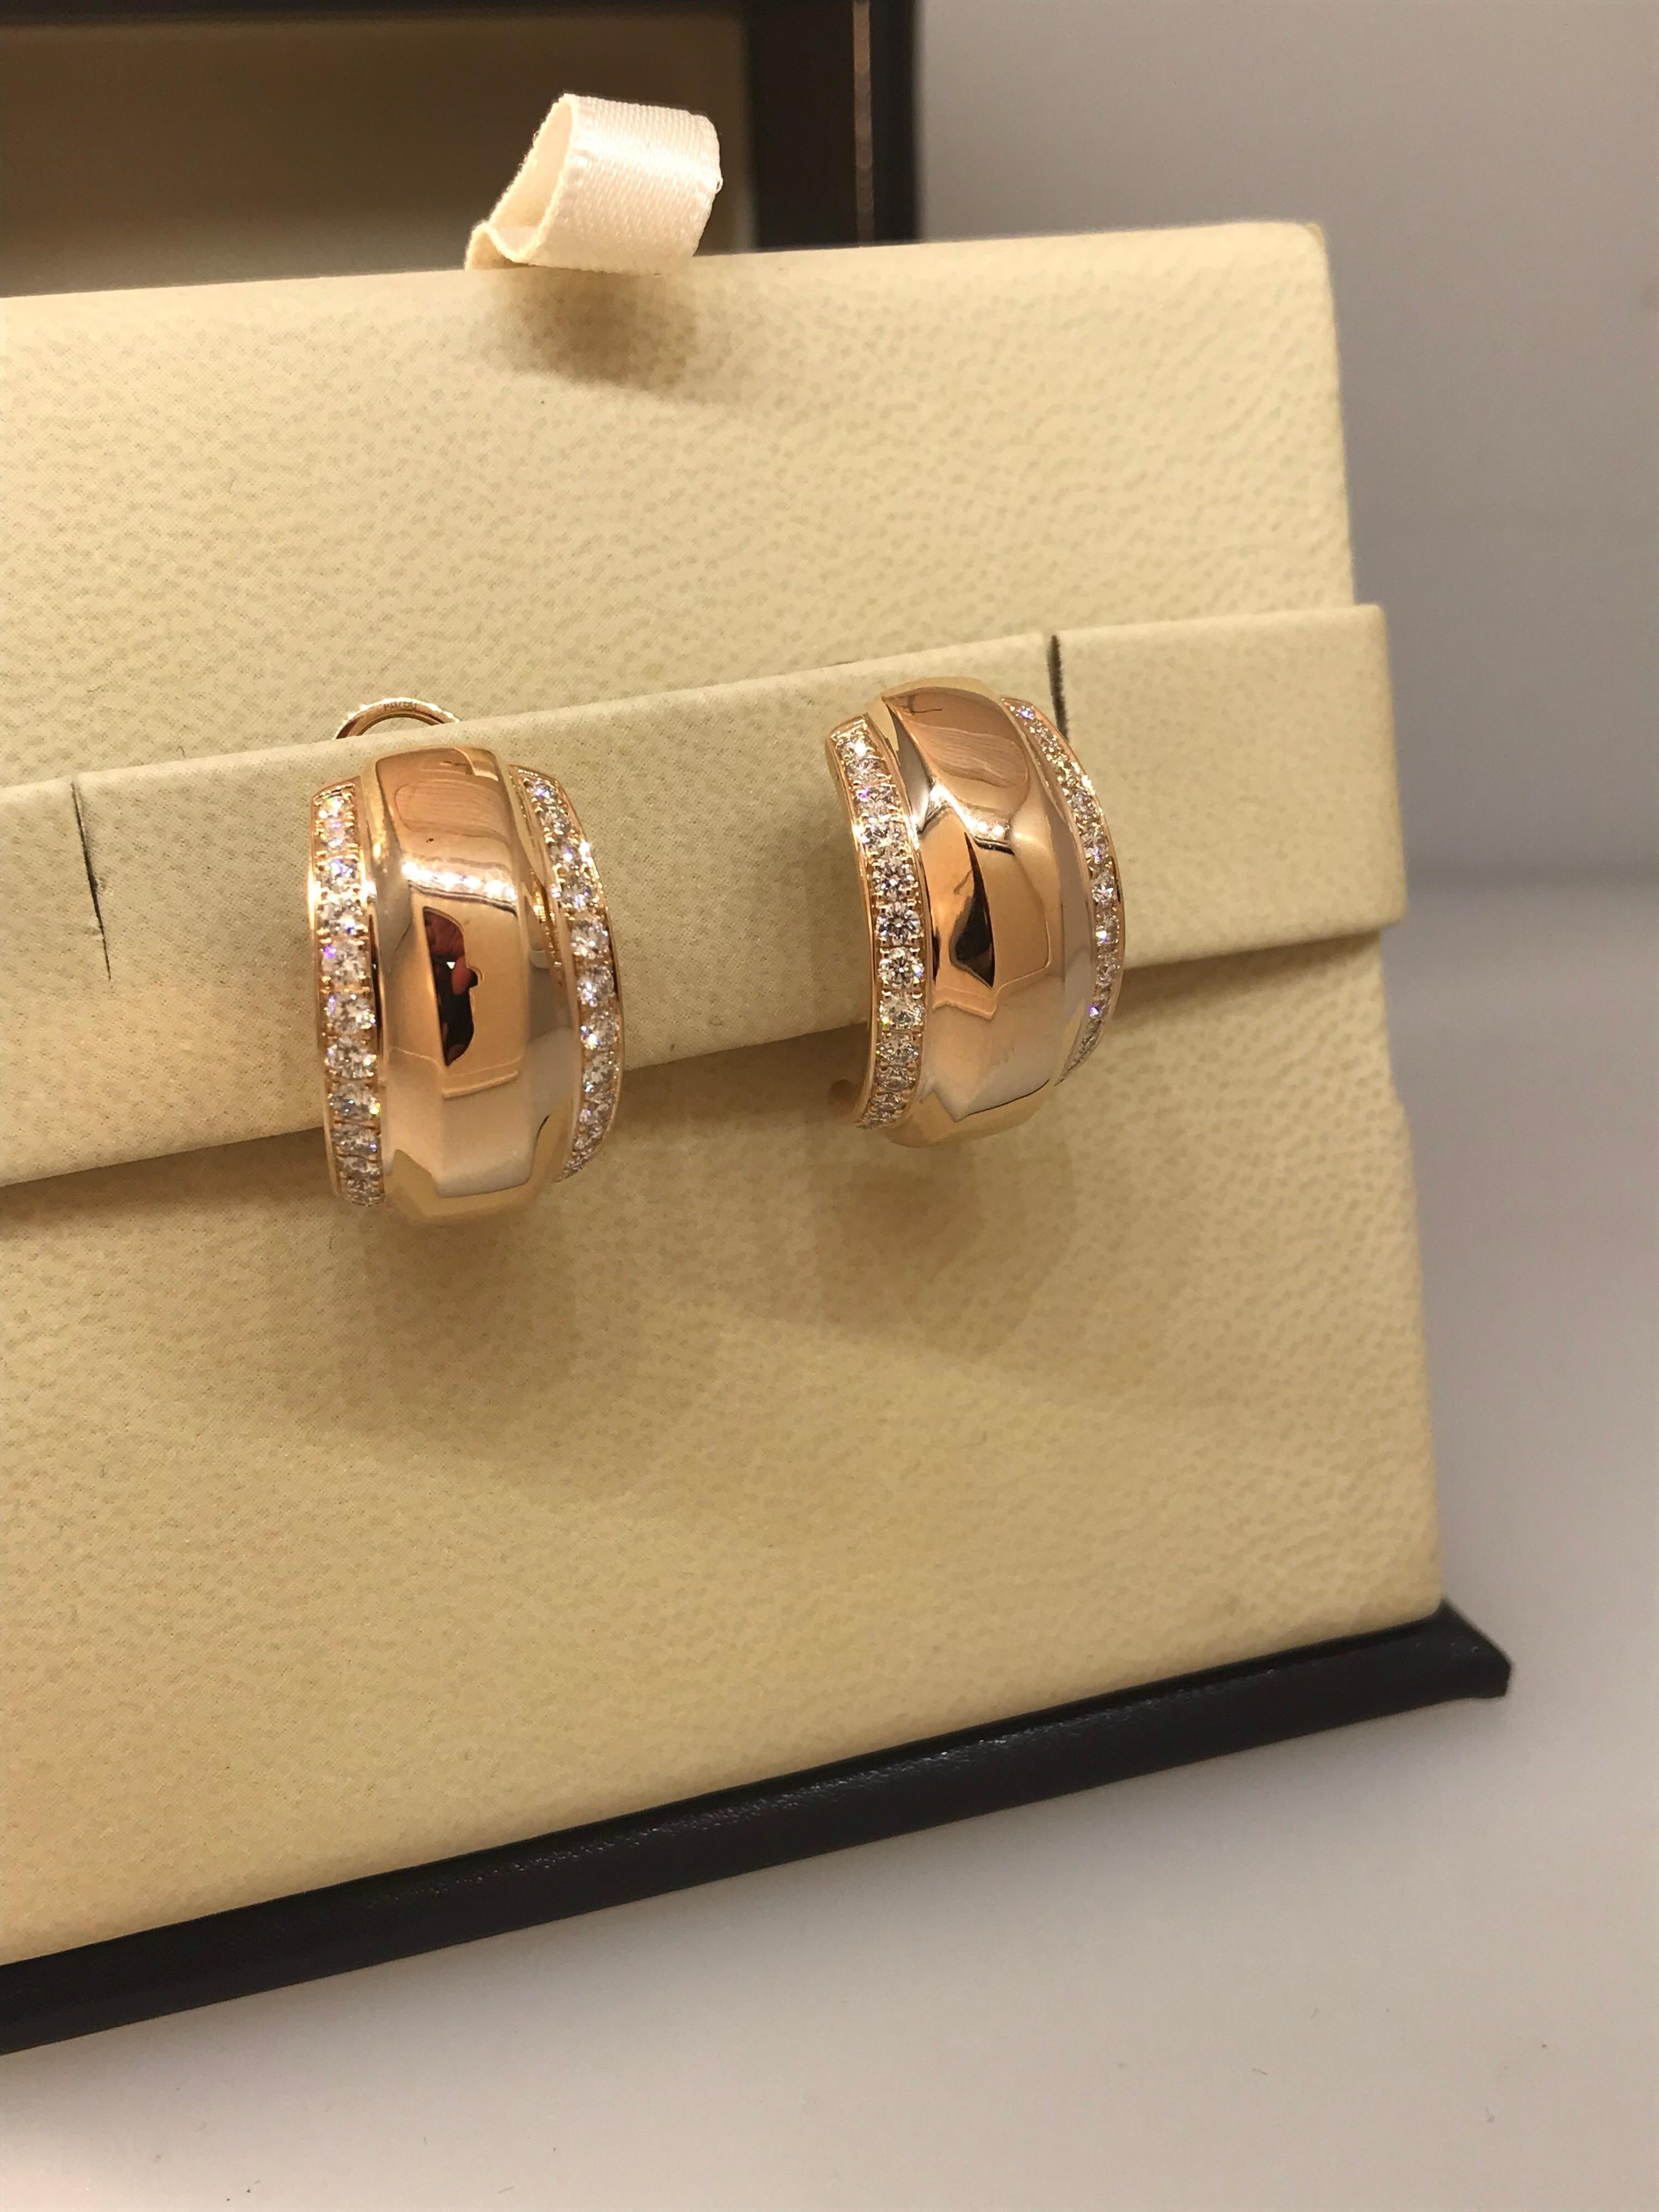 Women's Chopard La Strada 18 Karat Rose Gold and Diamond Earrings 84/9402-5001 For Sale